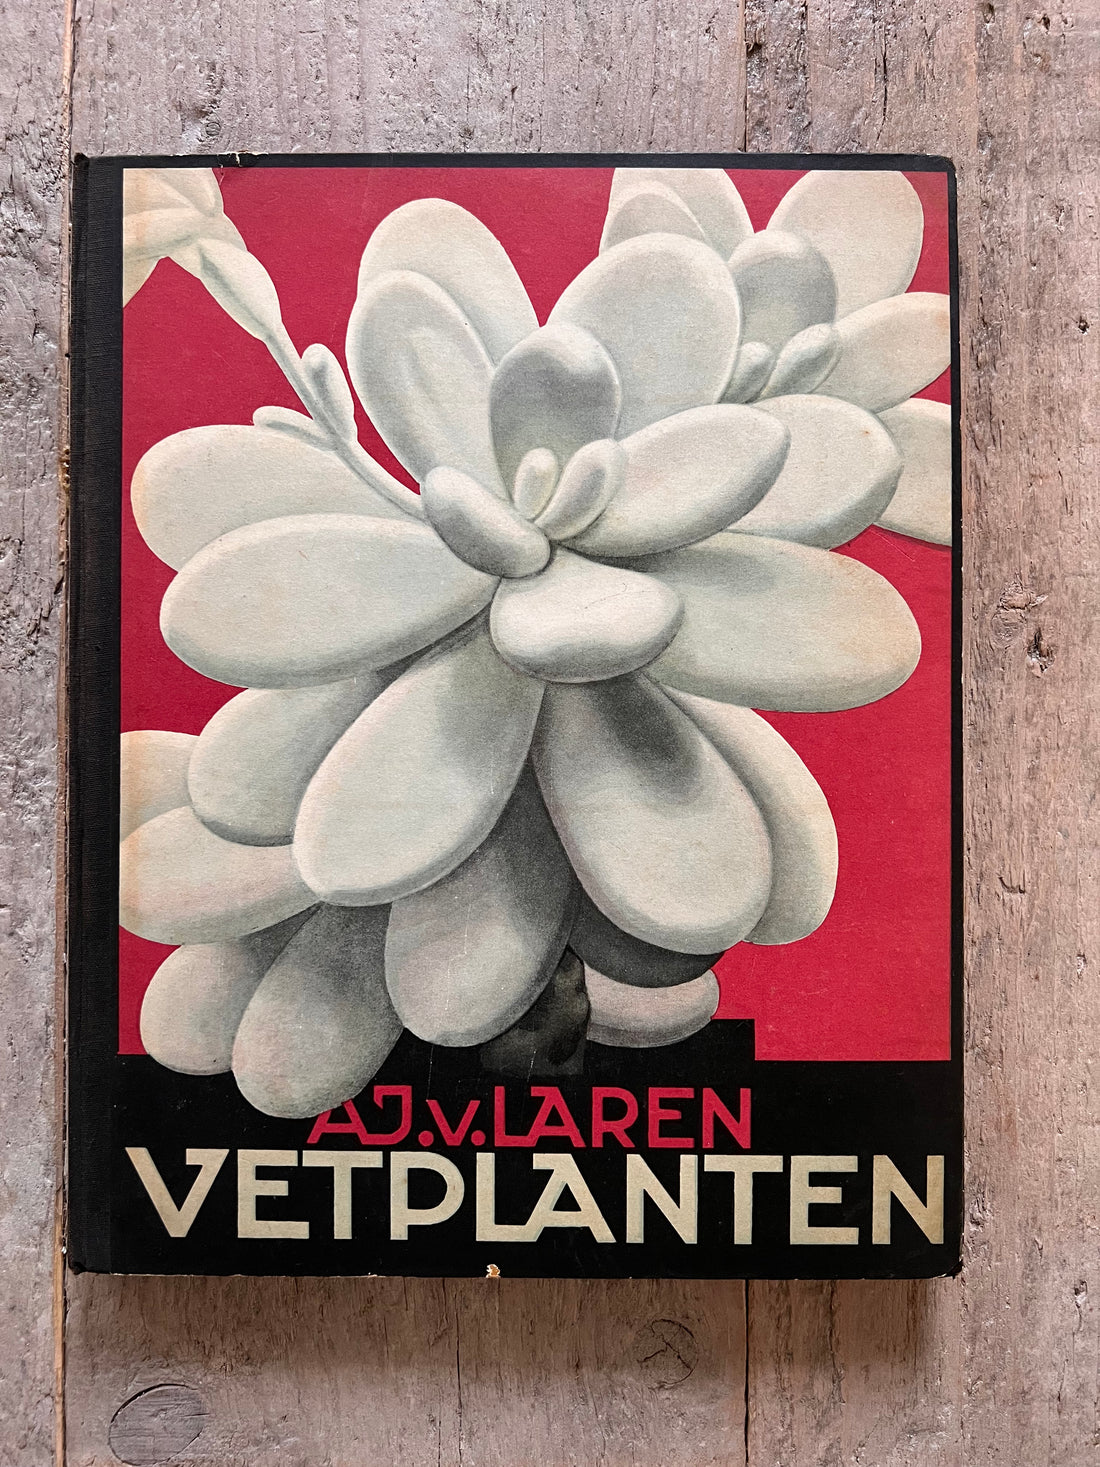 Verkade plaatjesboek vetplanten